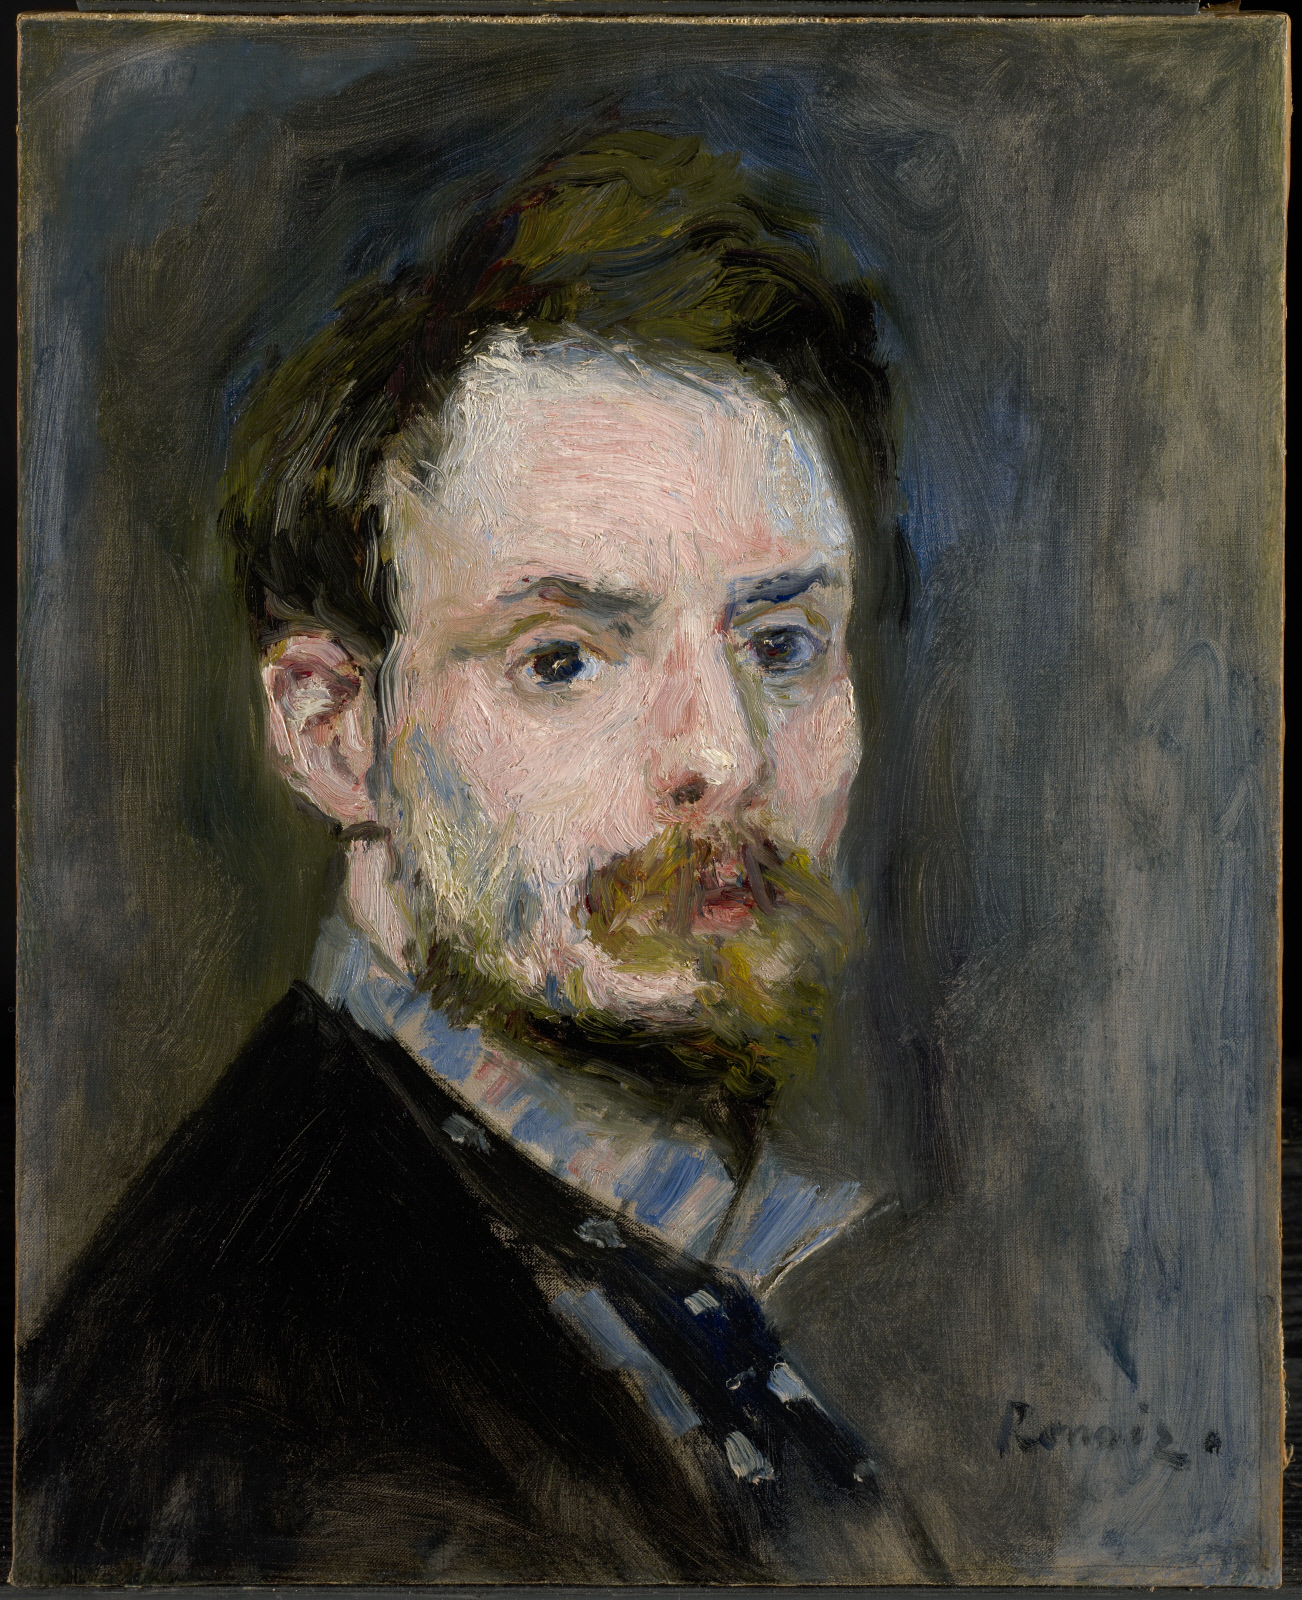 Autoportret by Pierre-Auguste Renoir - c. 1875 - 39.1 x 31.6 cm 